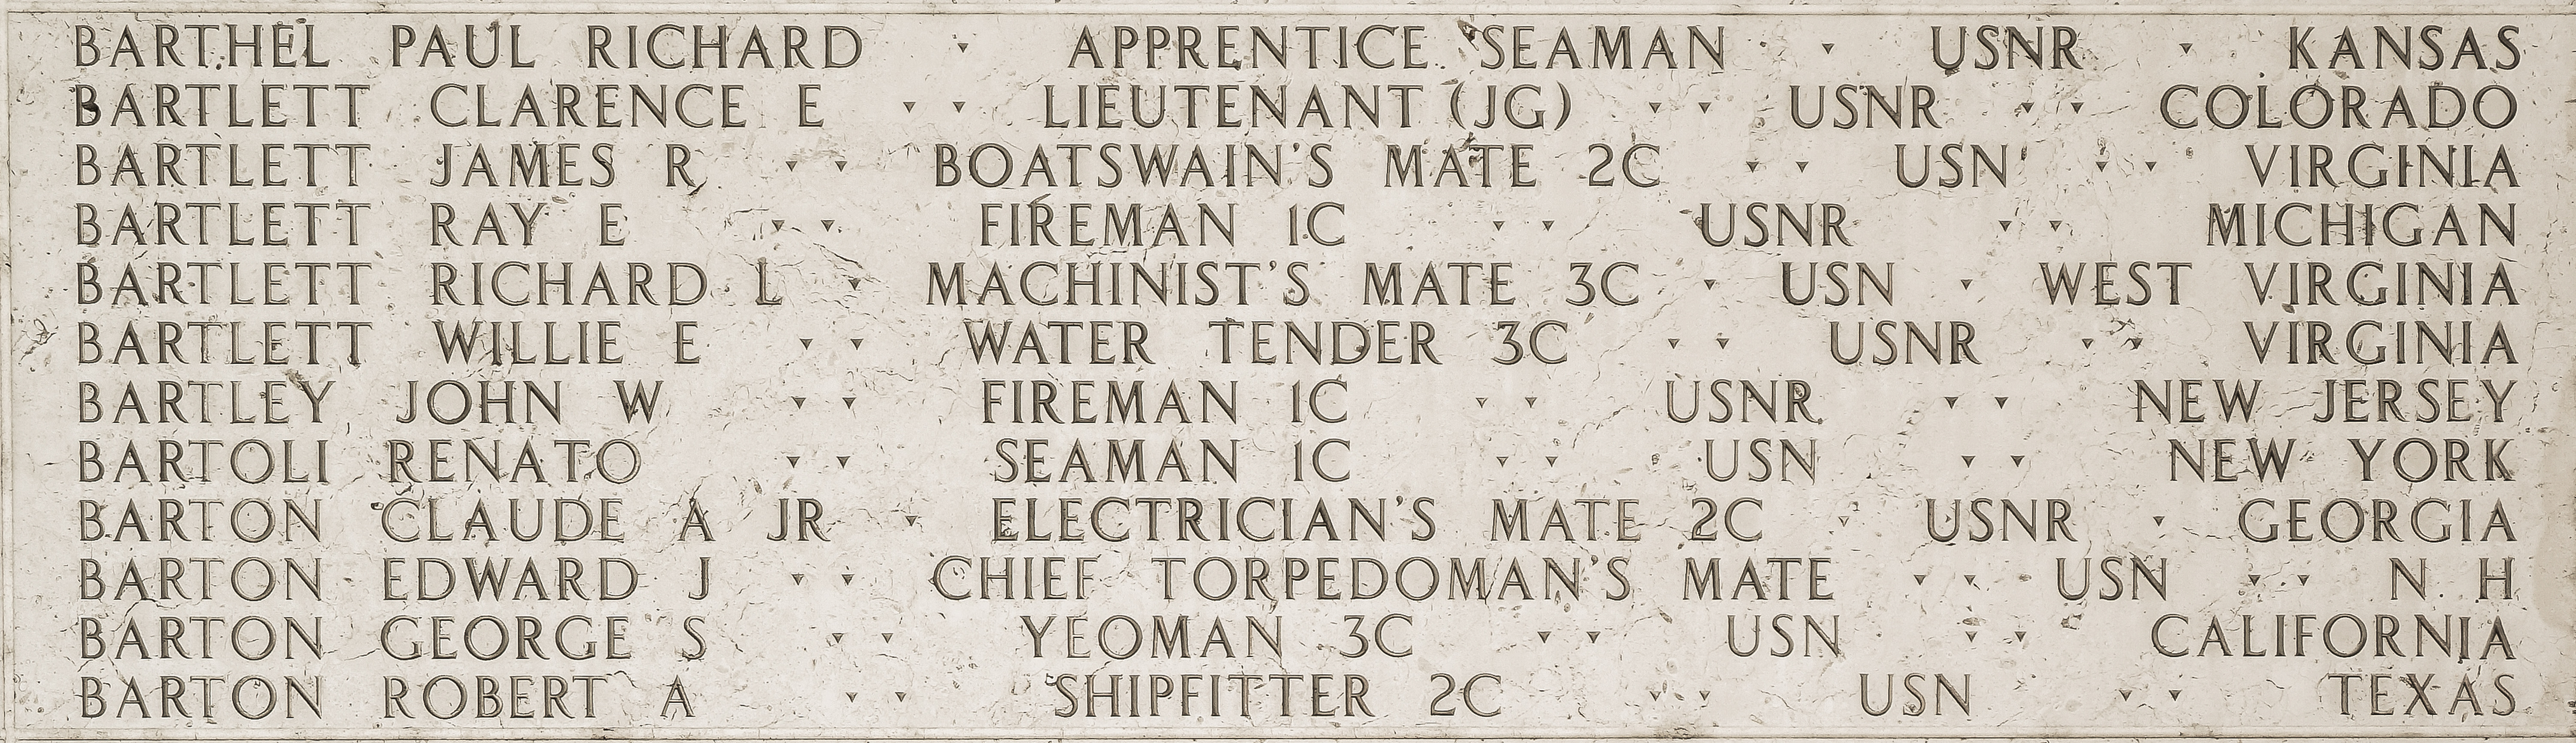 Robert A. Barton, Shipfitter Second Class